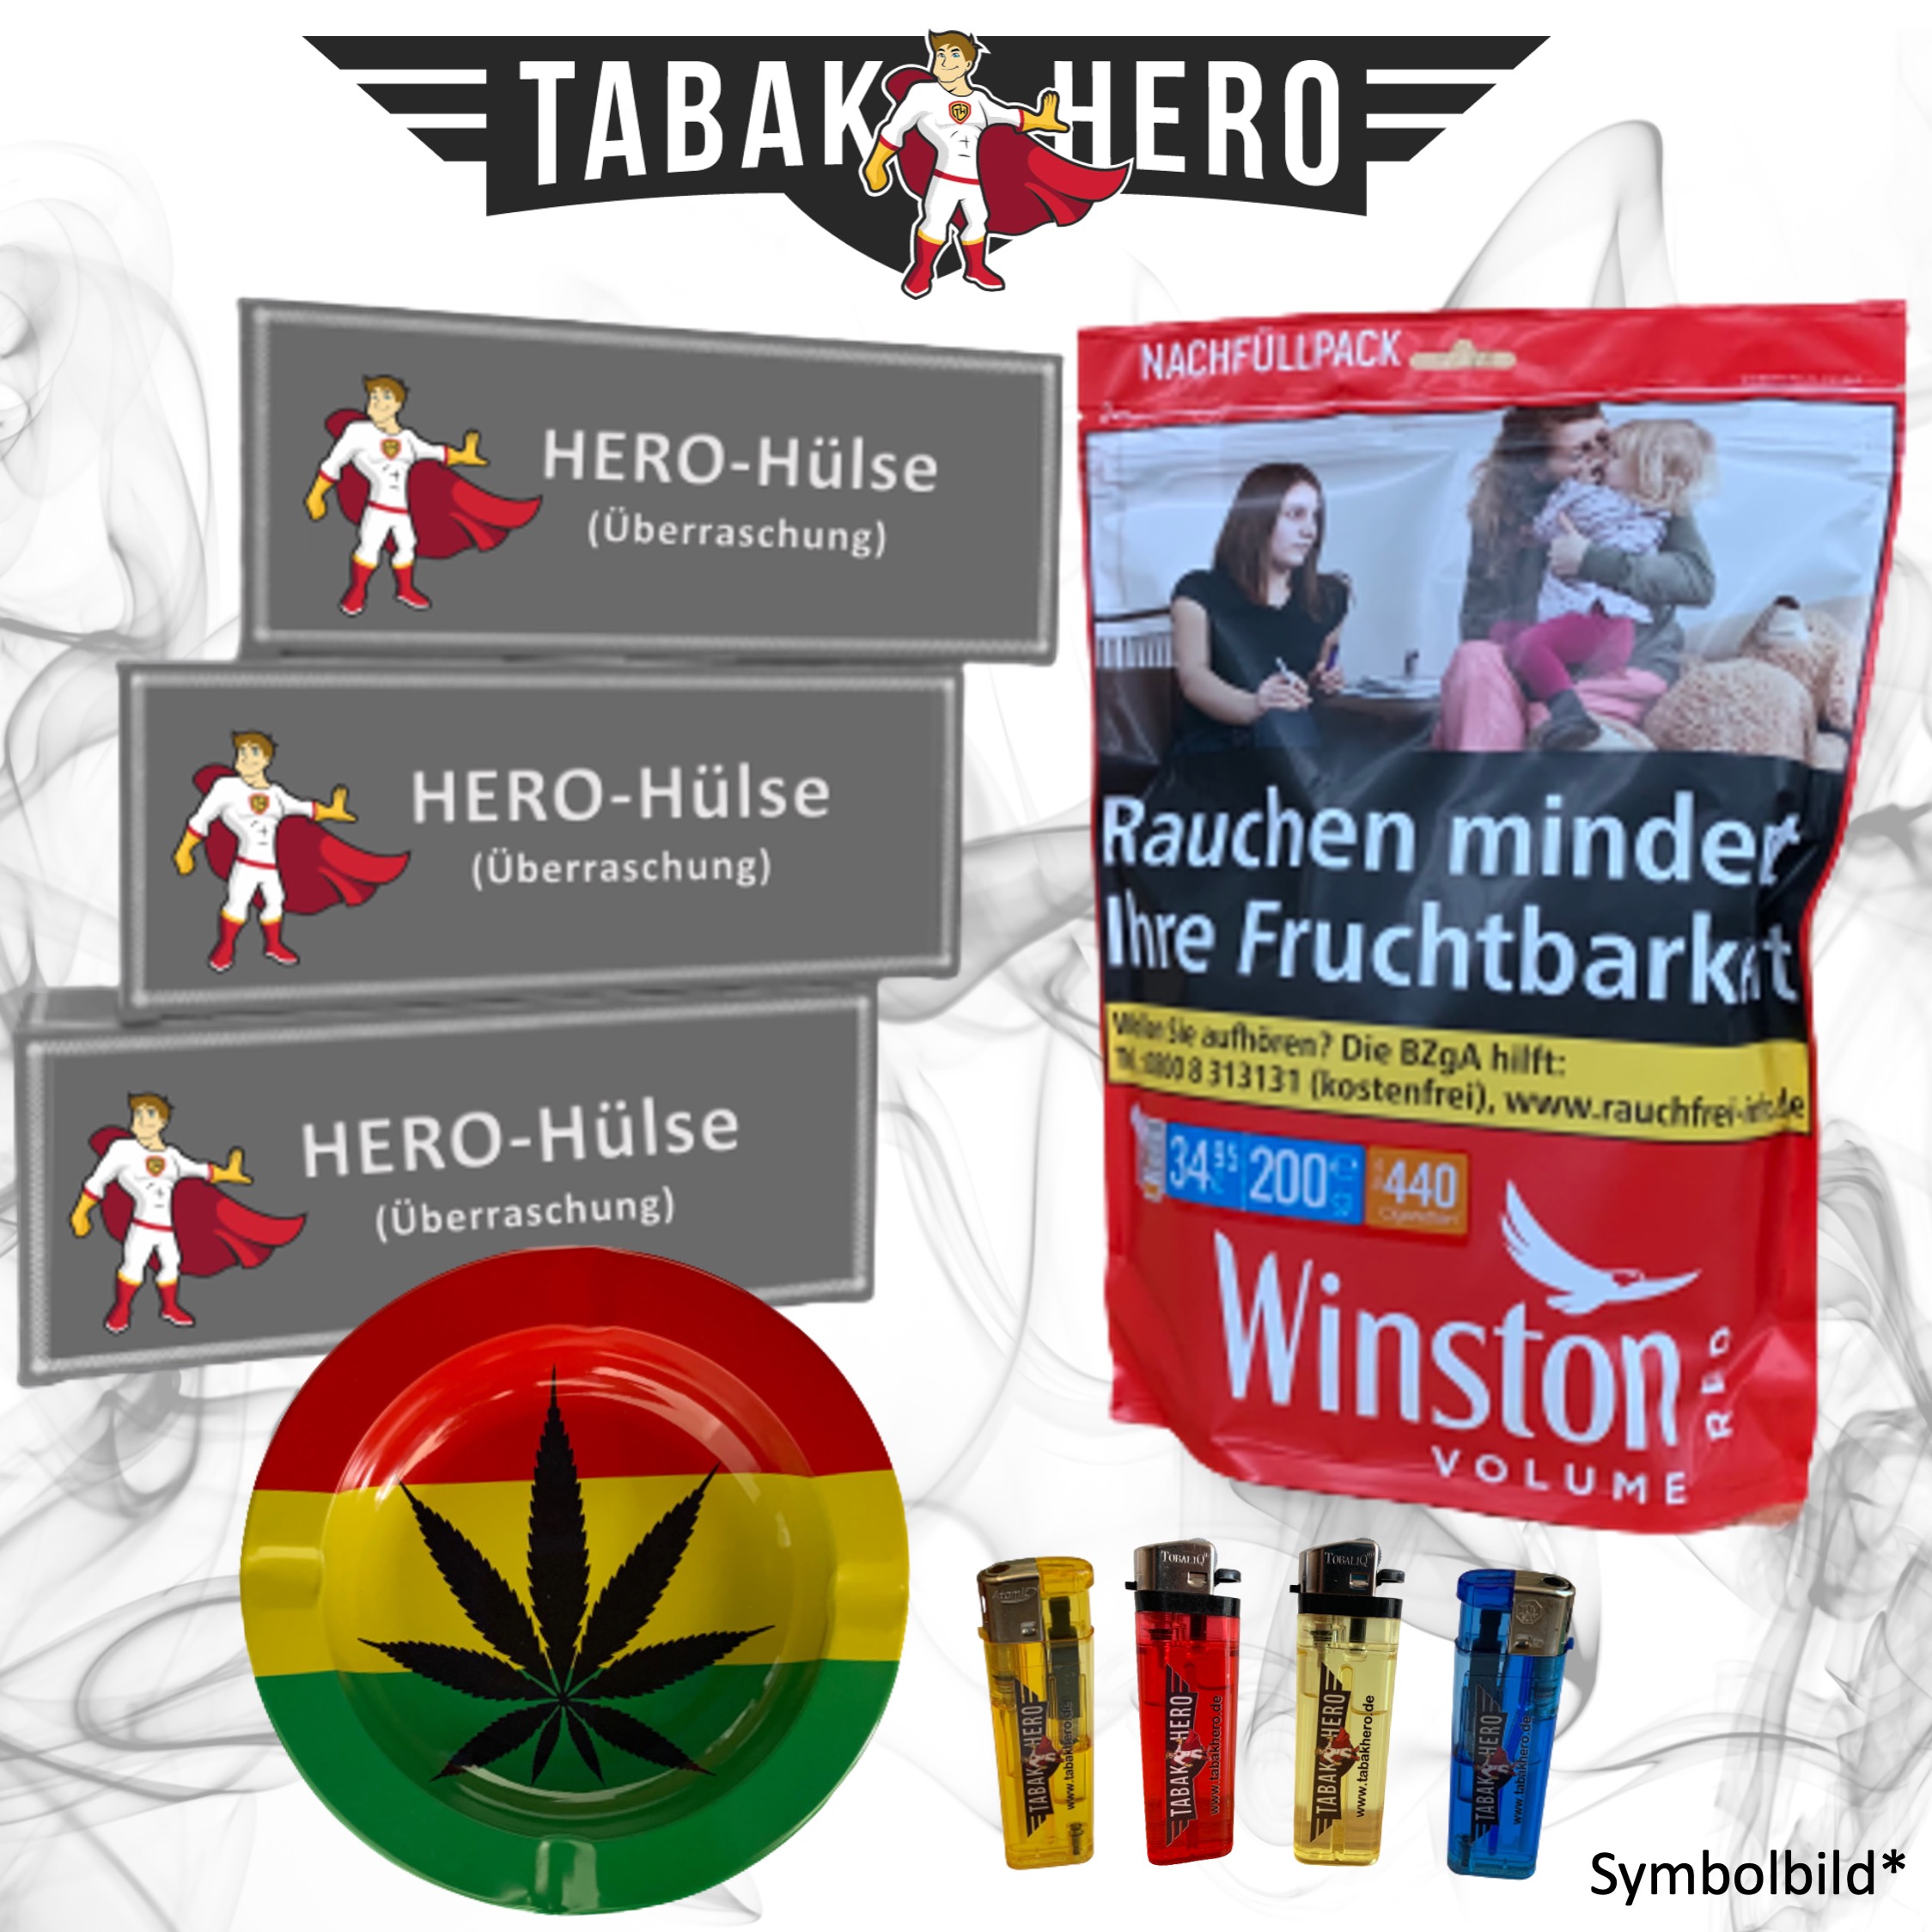 !ALTPREIS! 150g Winston Red Zip XXXL Tabak + 3x Hero-Hülsen 200er + Cannabis-AB und 4 Feuerzeugen